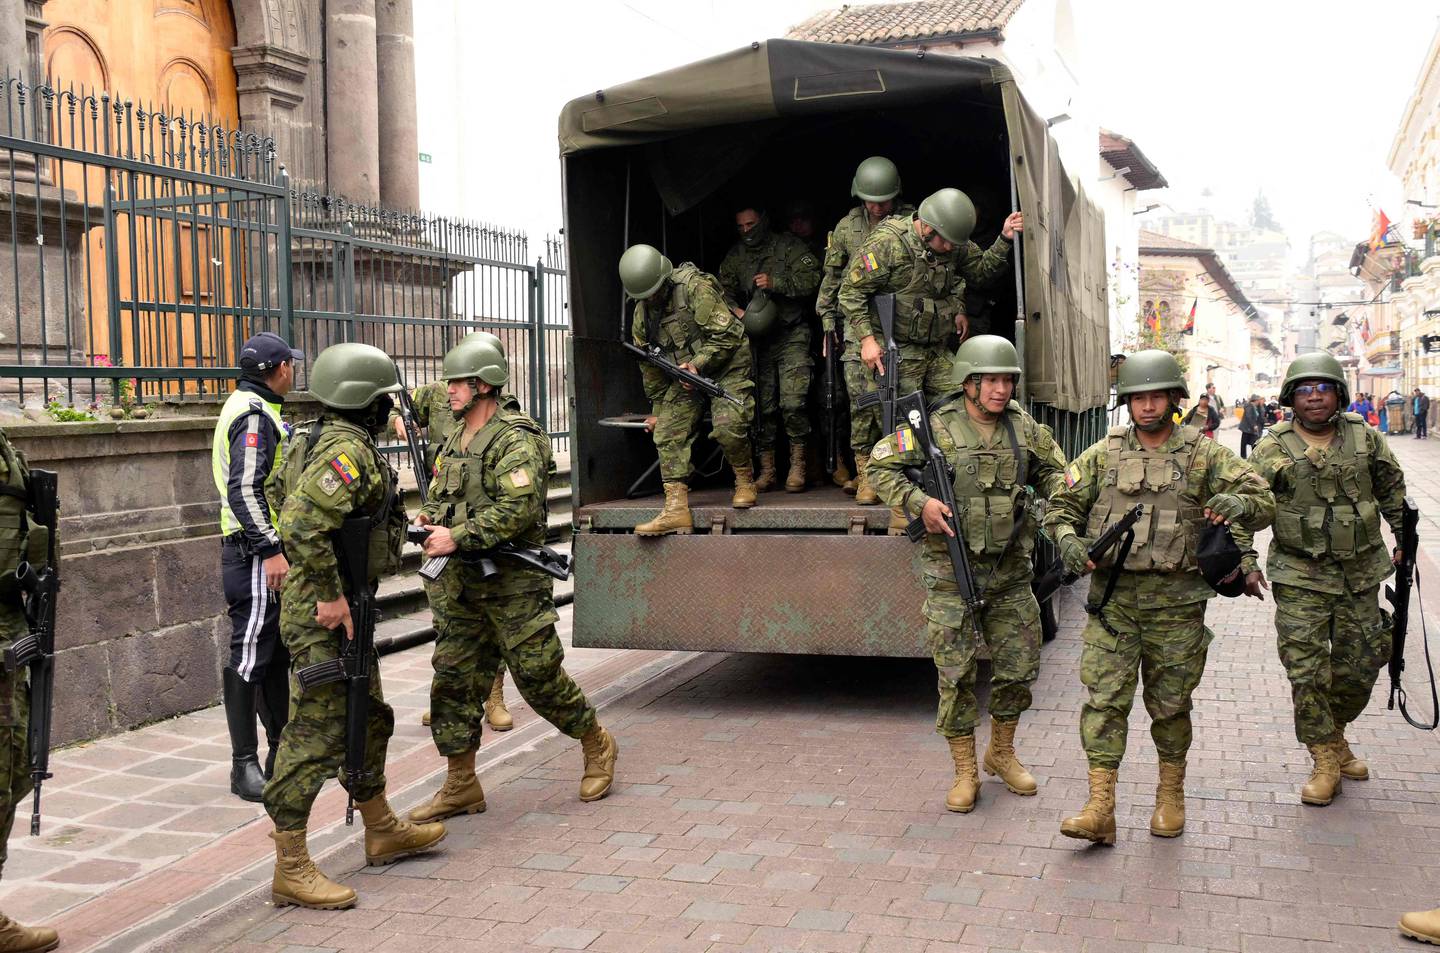 Los soldados están desplegados en el centro de Quito desde este martes, un día después de que el presidente ecuatoriano, Daniel Noboa, declarara el estado de emergencia tras la fuga de prisión de un peligroso jefe narco. Al menos cuatro agentes de policía fueron secuestrados en Ecuador.